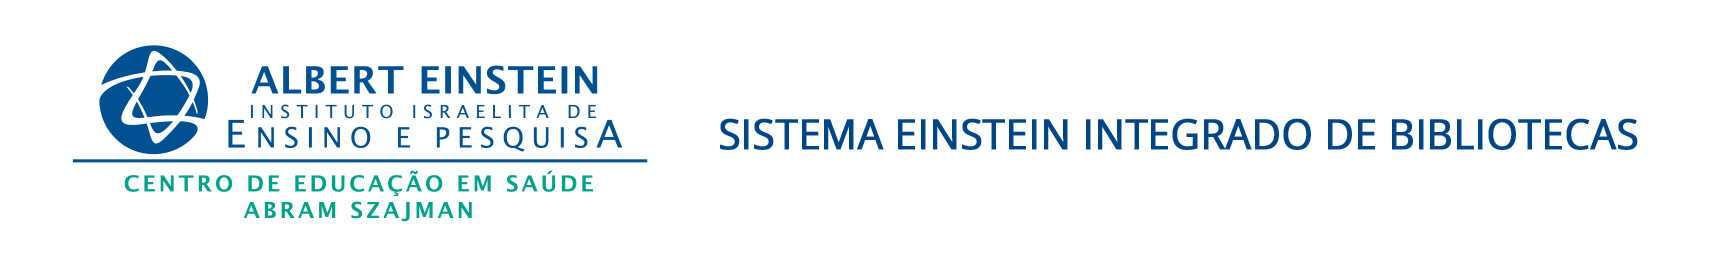 Einstein_logo_biblioteca.png